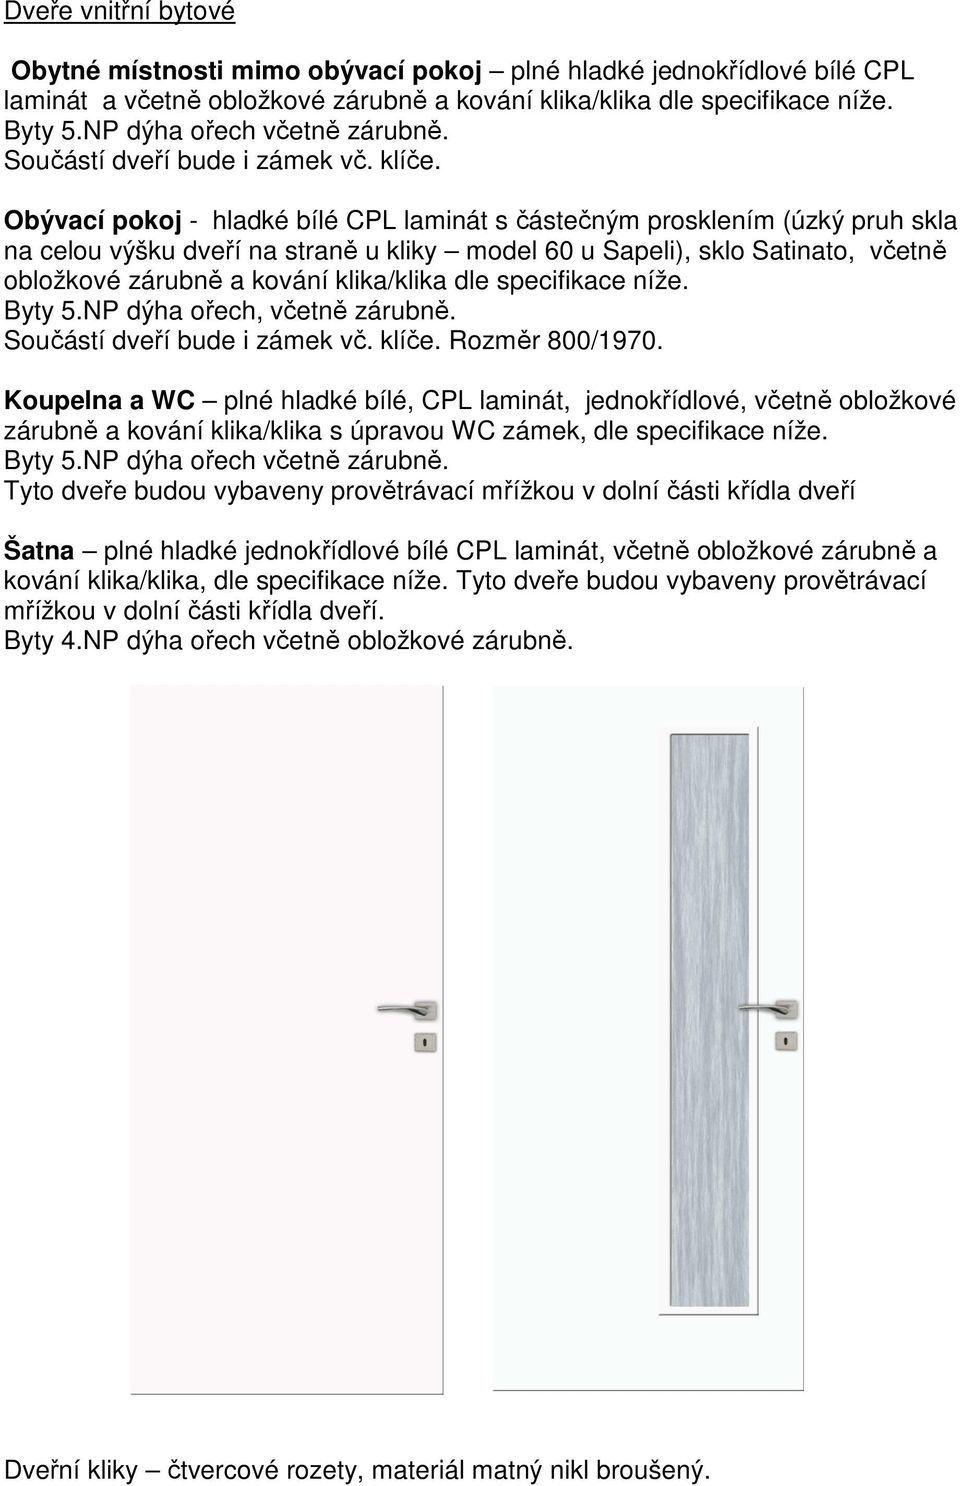 Obývací pokoj - hladké bílé CPL laminát s částečným prosklením (úzký pruh skla na celou výšku dveří na straně u kliky model 60 u Sapeli), sklo Satinato, včetně obložkové zárubně a kování klika/klika